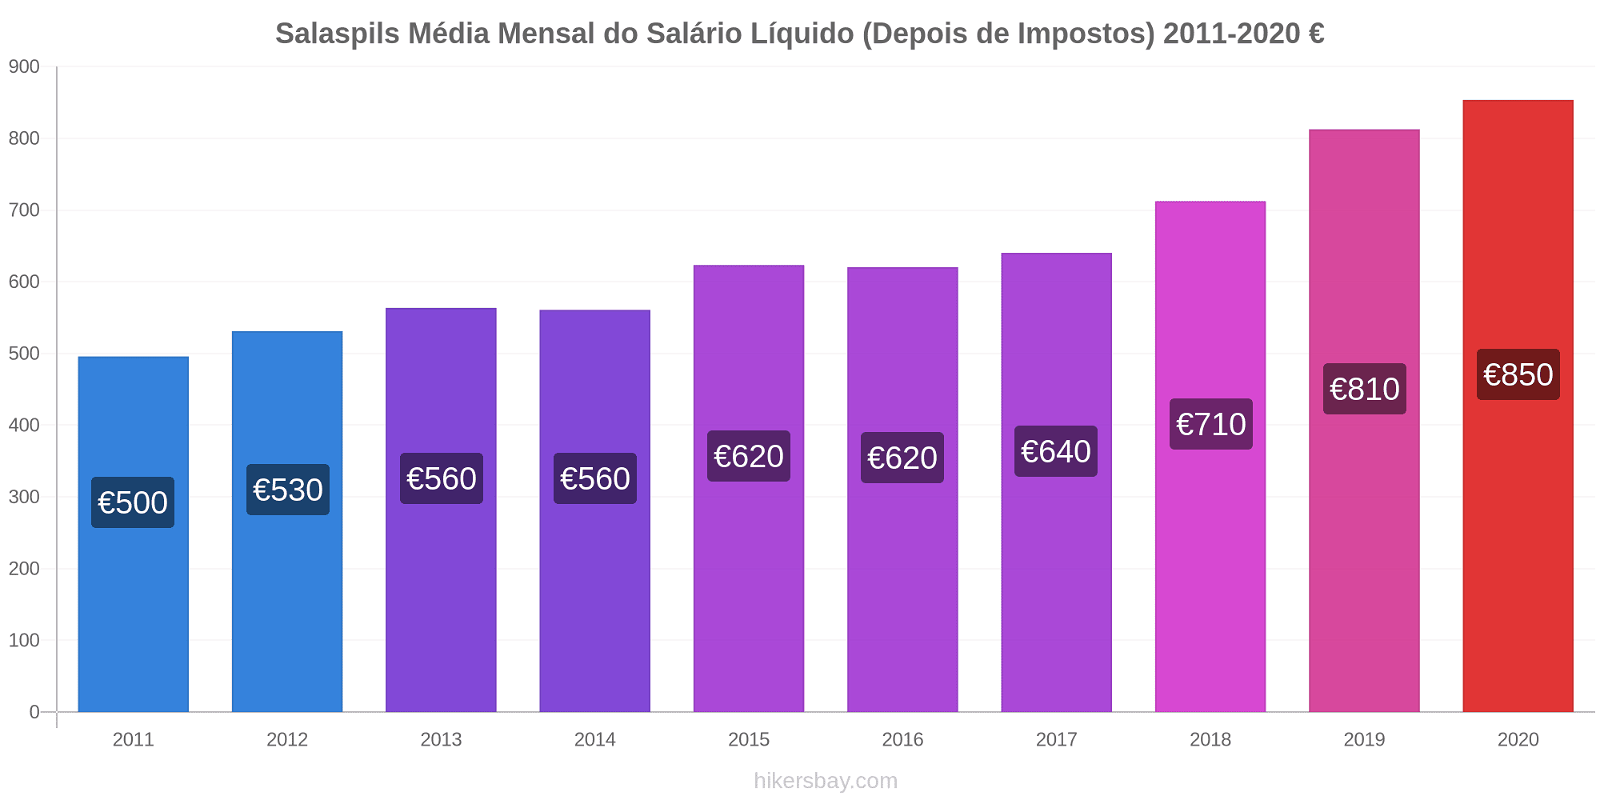 Salaspils variação de preço Salário líquido mensal médio (depois de impostos) hikersbay.com